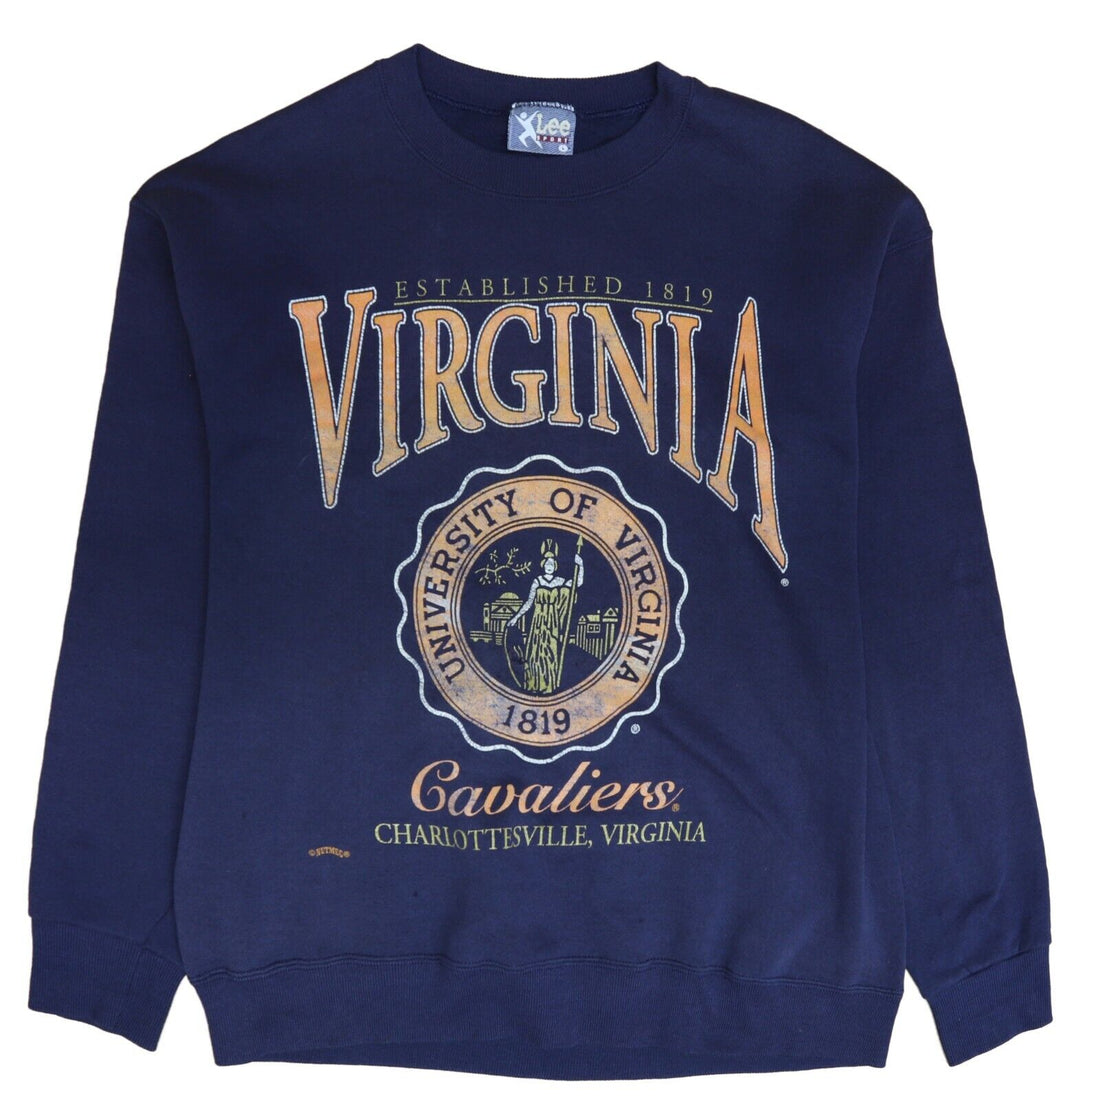 Vintage Virginia Cavaliers Crest Sweatshirt Crewneck Size Large 90s NCAA